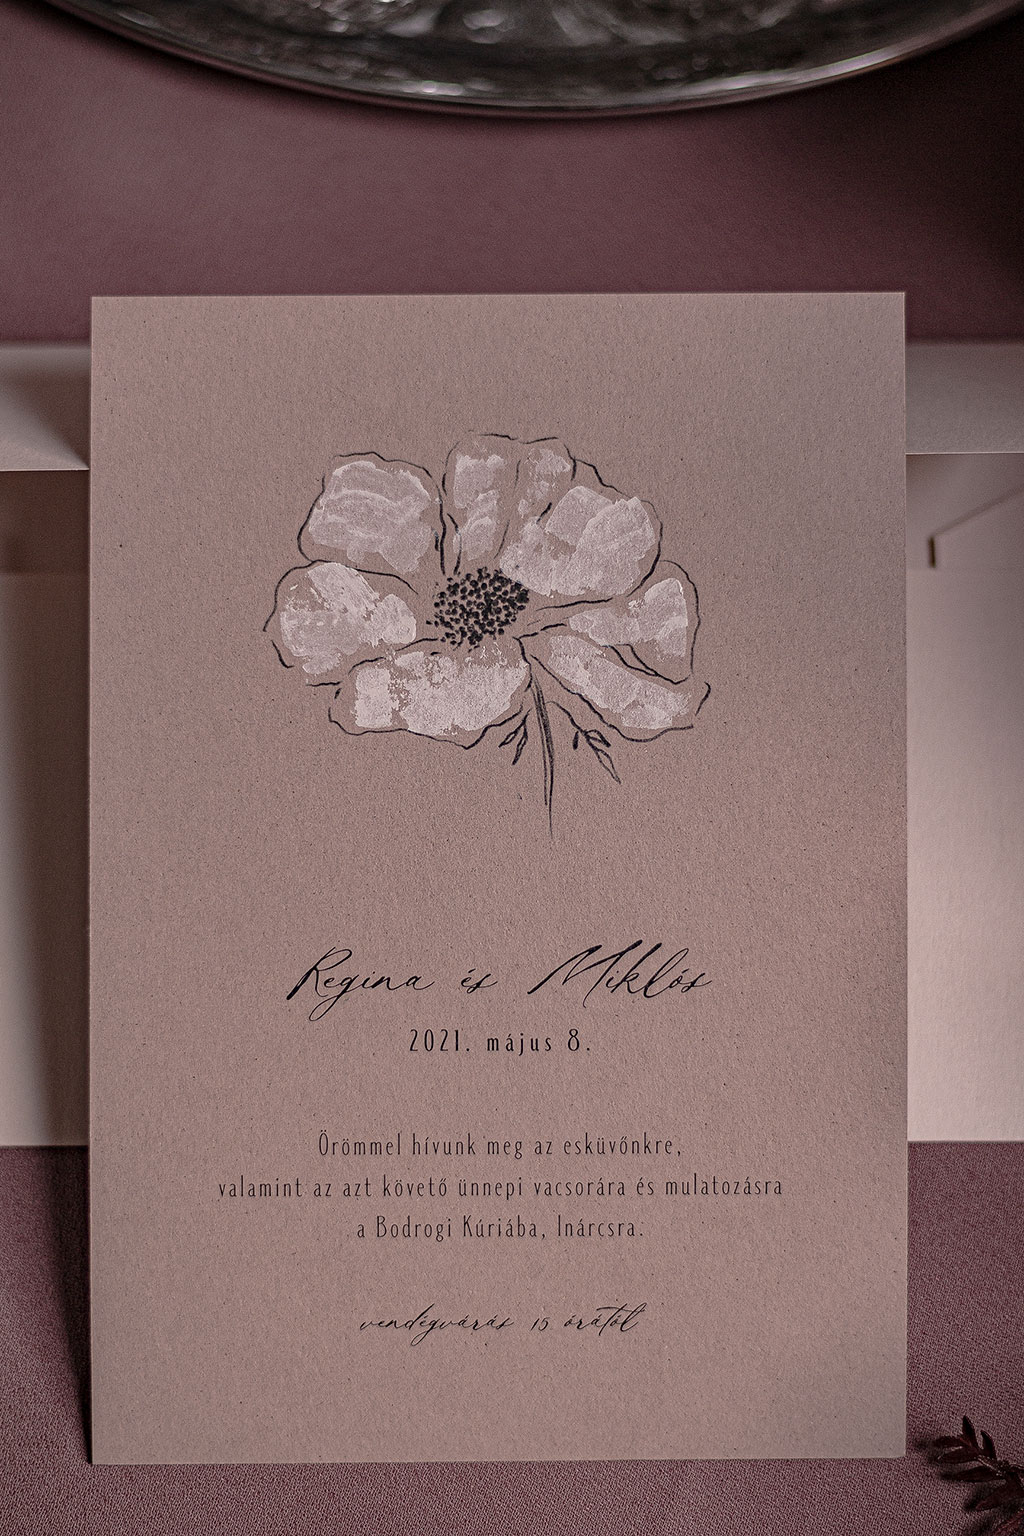 Púder festéssel díszített virágos meghívó három különböző árnyalatú és felületű rózsaszín papíron, kétféle virággrafikával, fekete nyomtatással